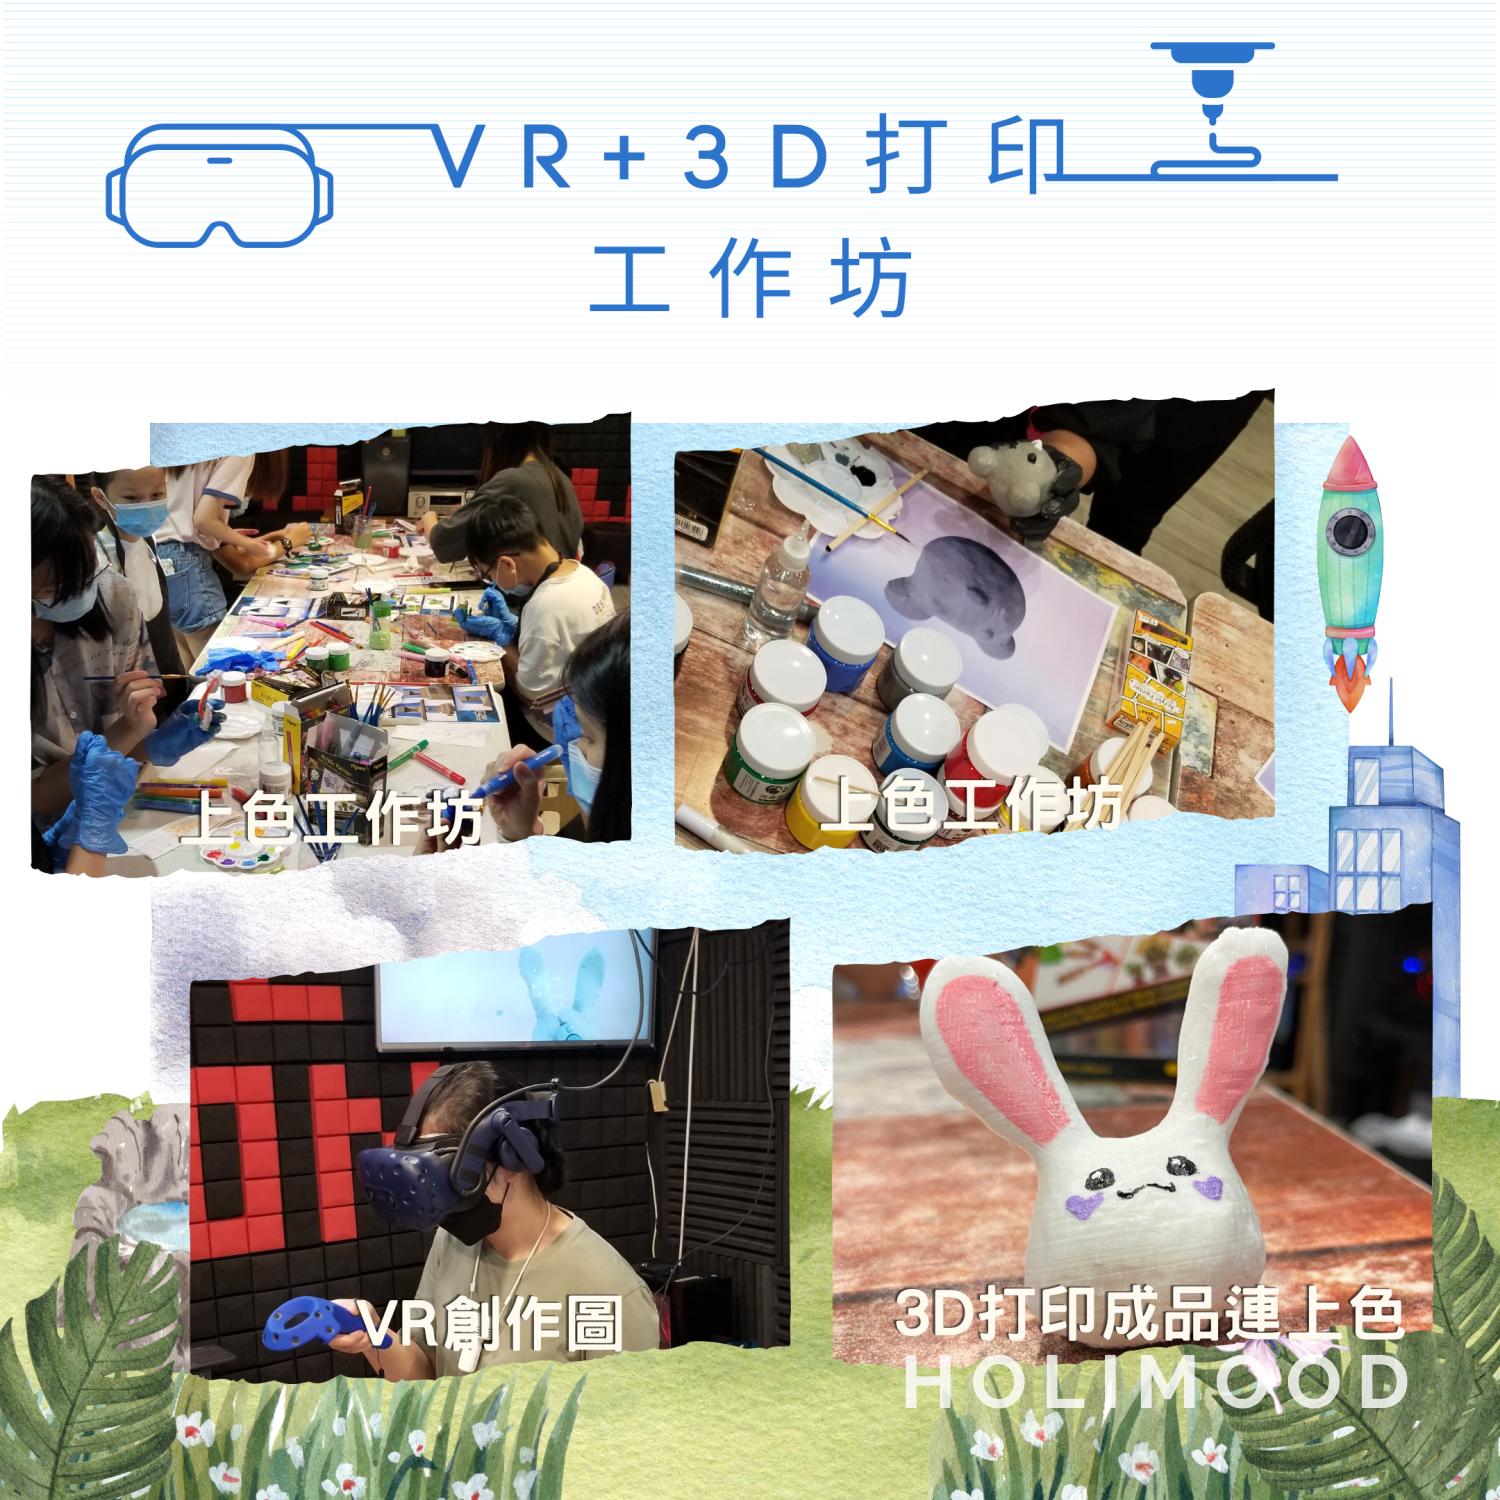 V-Owl Station VR Party VR+3D打印工作坊 7